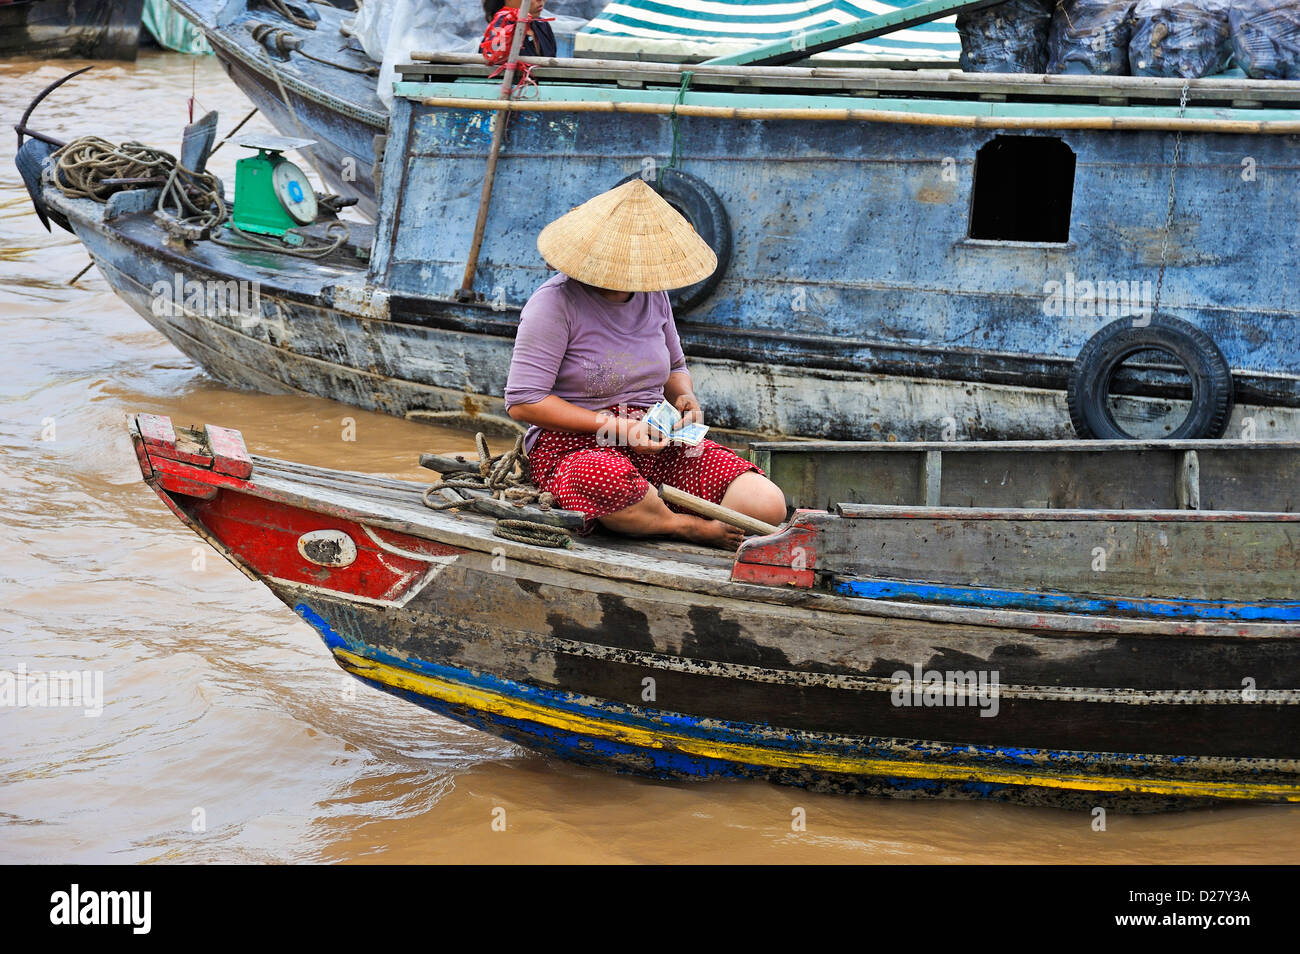 Mekong River, Vietnam, Tien Giang Provinz - Frau auf einem Boot, Geld zählen Stockfoto